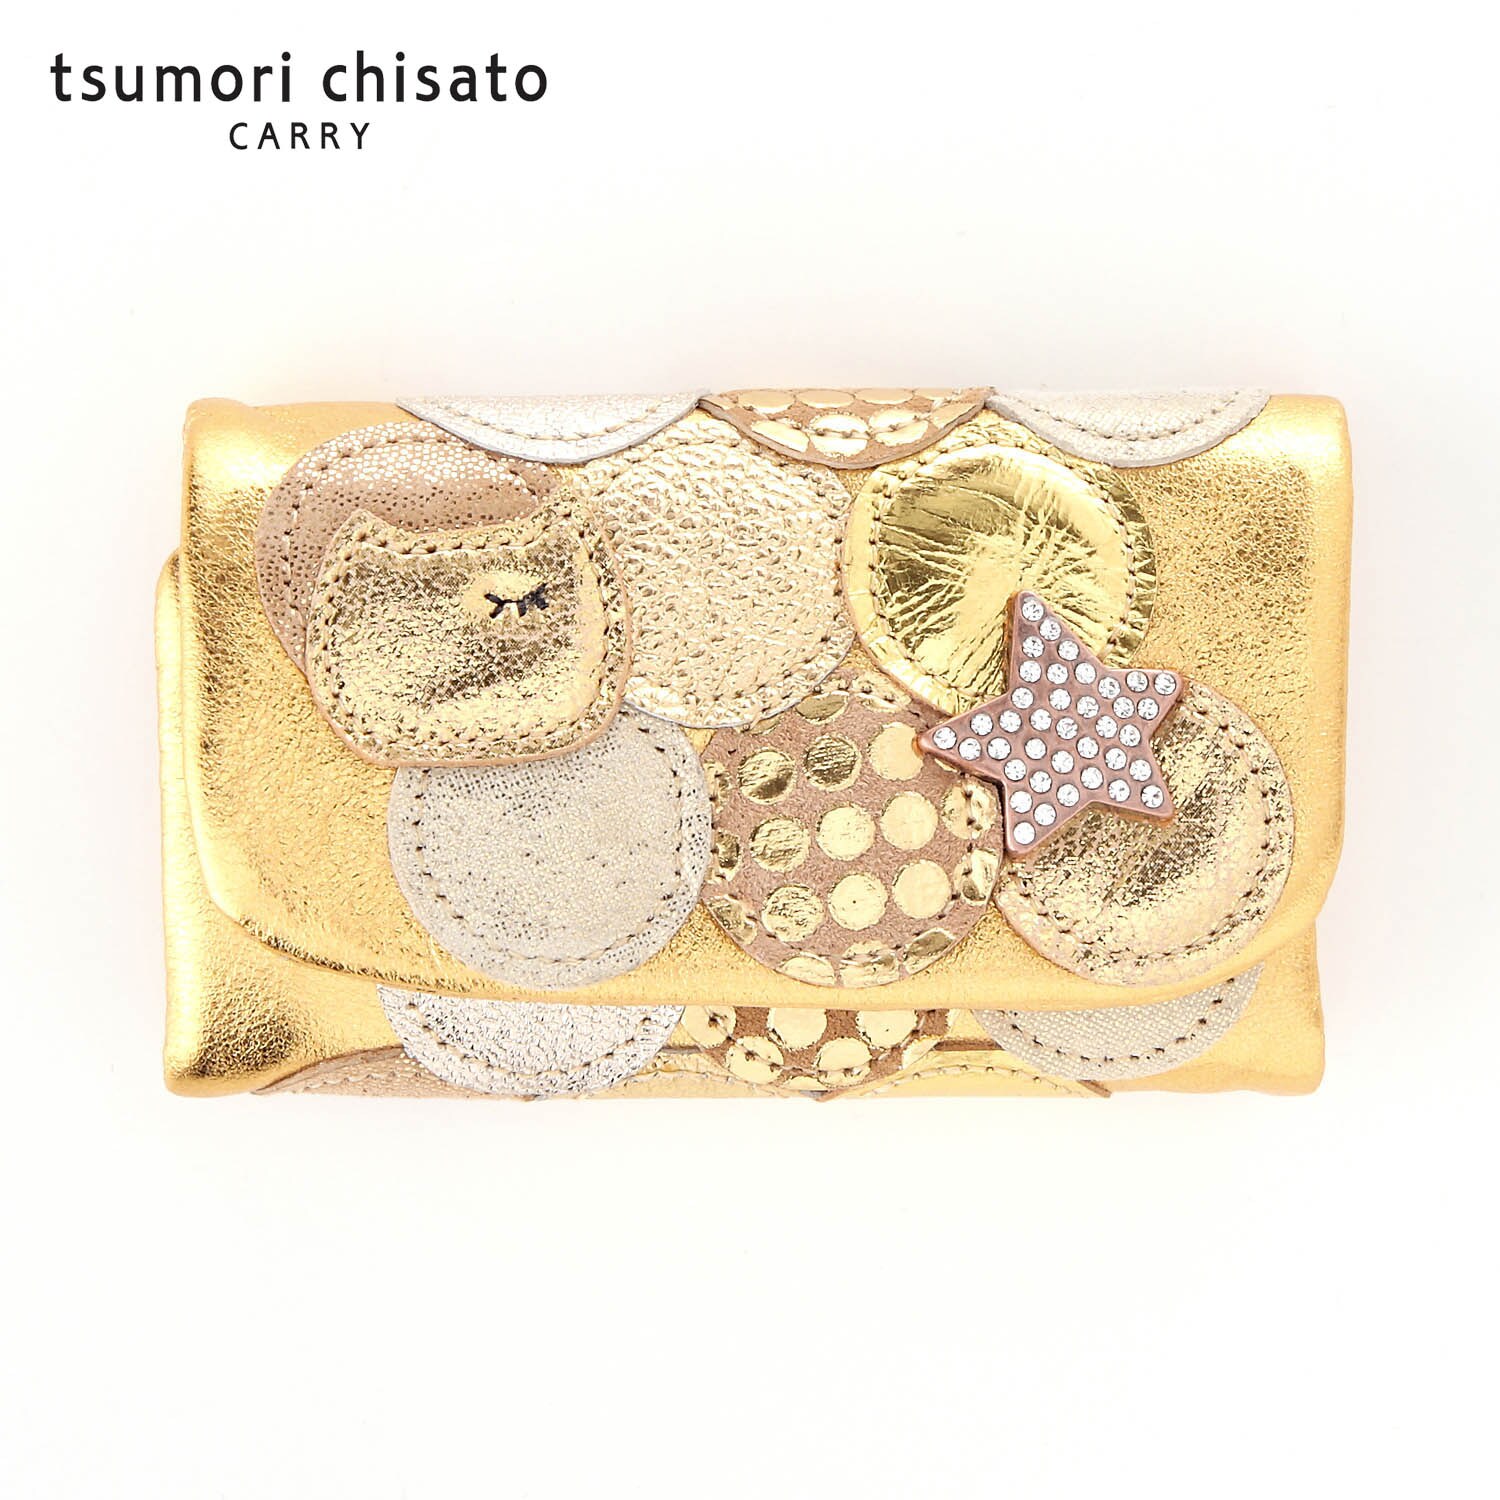 【ツモリ チサト トラベル/tsumori chisato TRAVEL】【日本製】本革キーケース/マルチドット